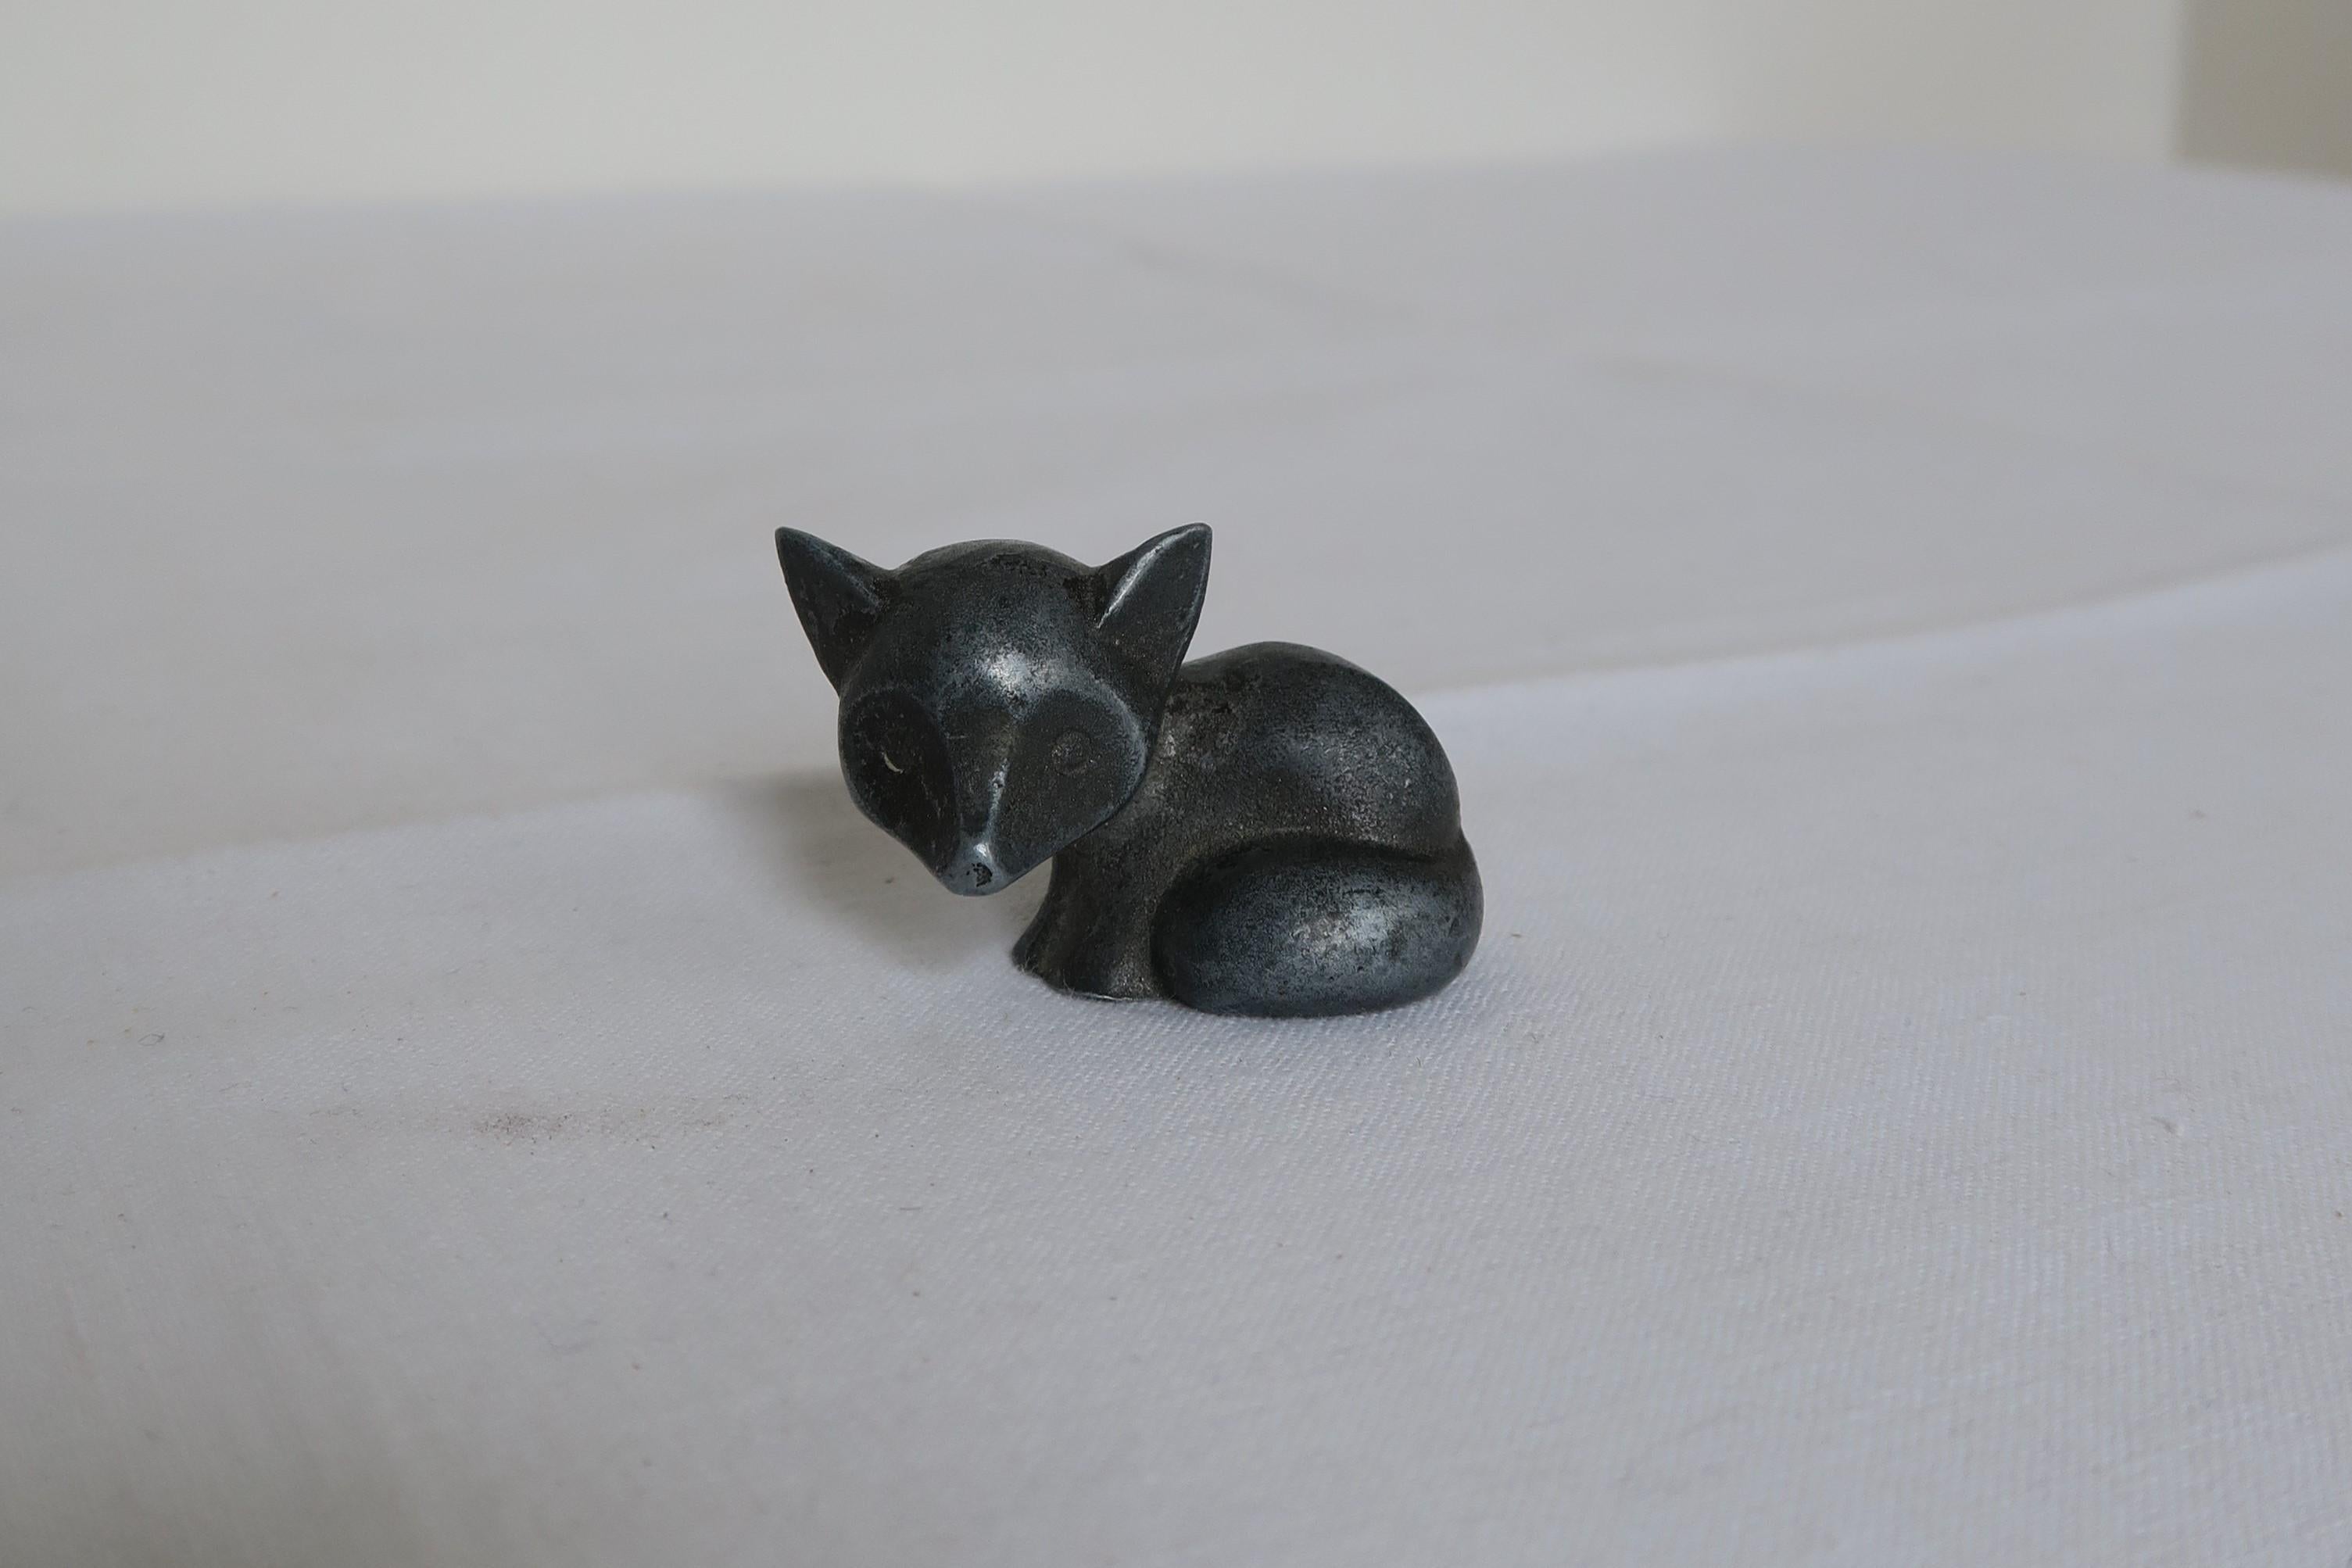 Cette adorable petite sculpture miniature de renard a été réalisée en 1940 par la Werkstätte Hagenauer d'Autriche. Habituellement, ces figurines étaient fabriquées en laiton, mais toutes les ressources en laiton étaient nécessaires à la production